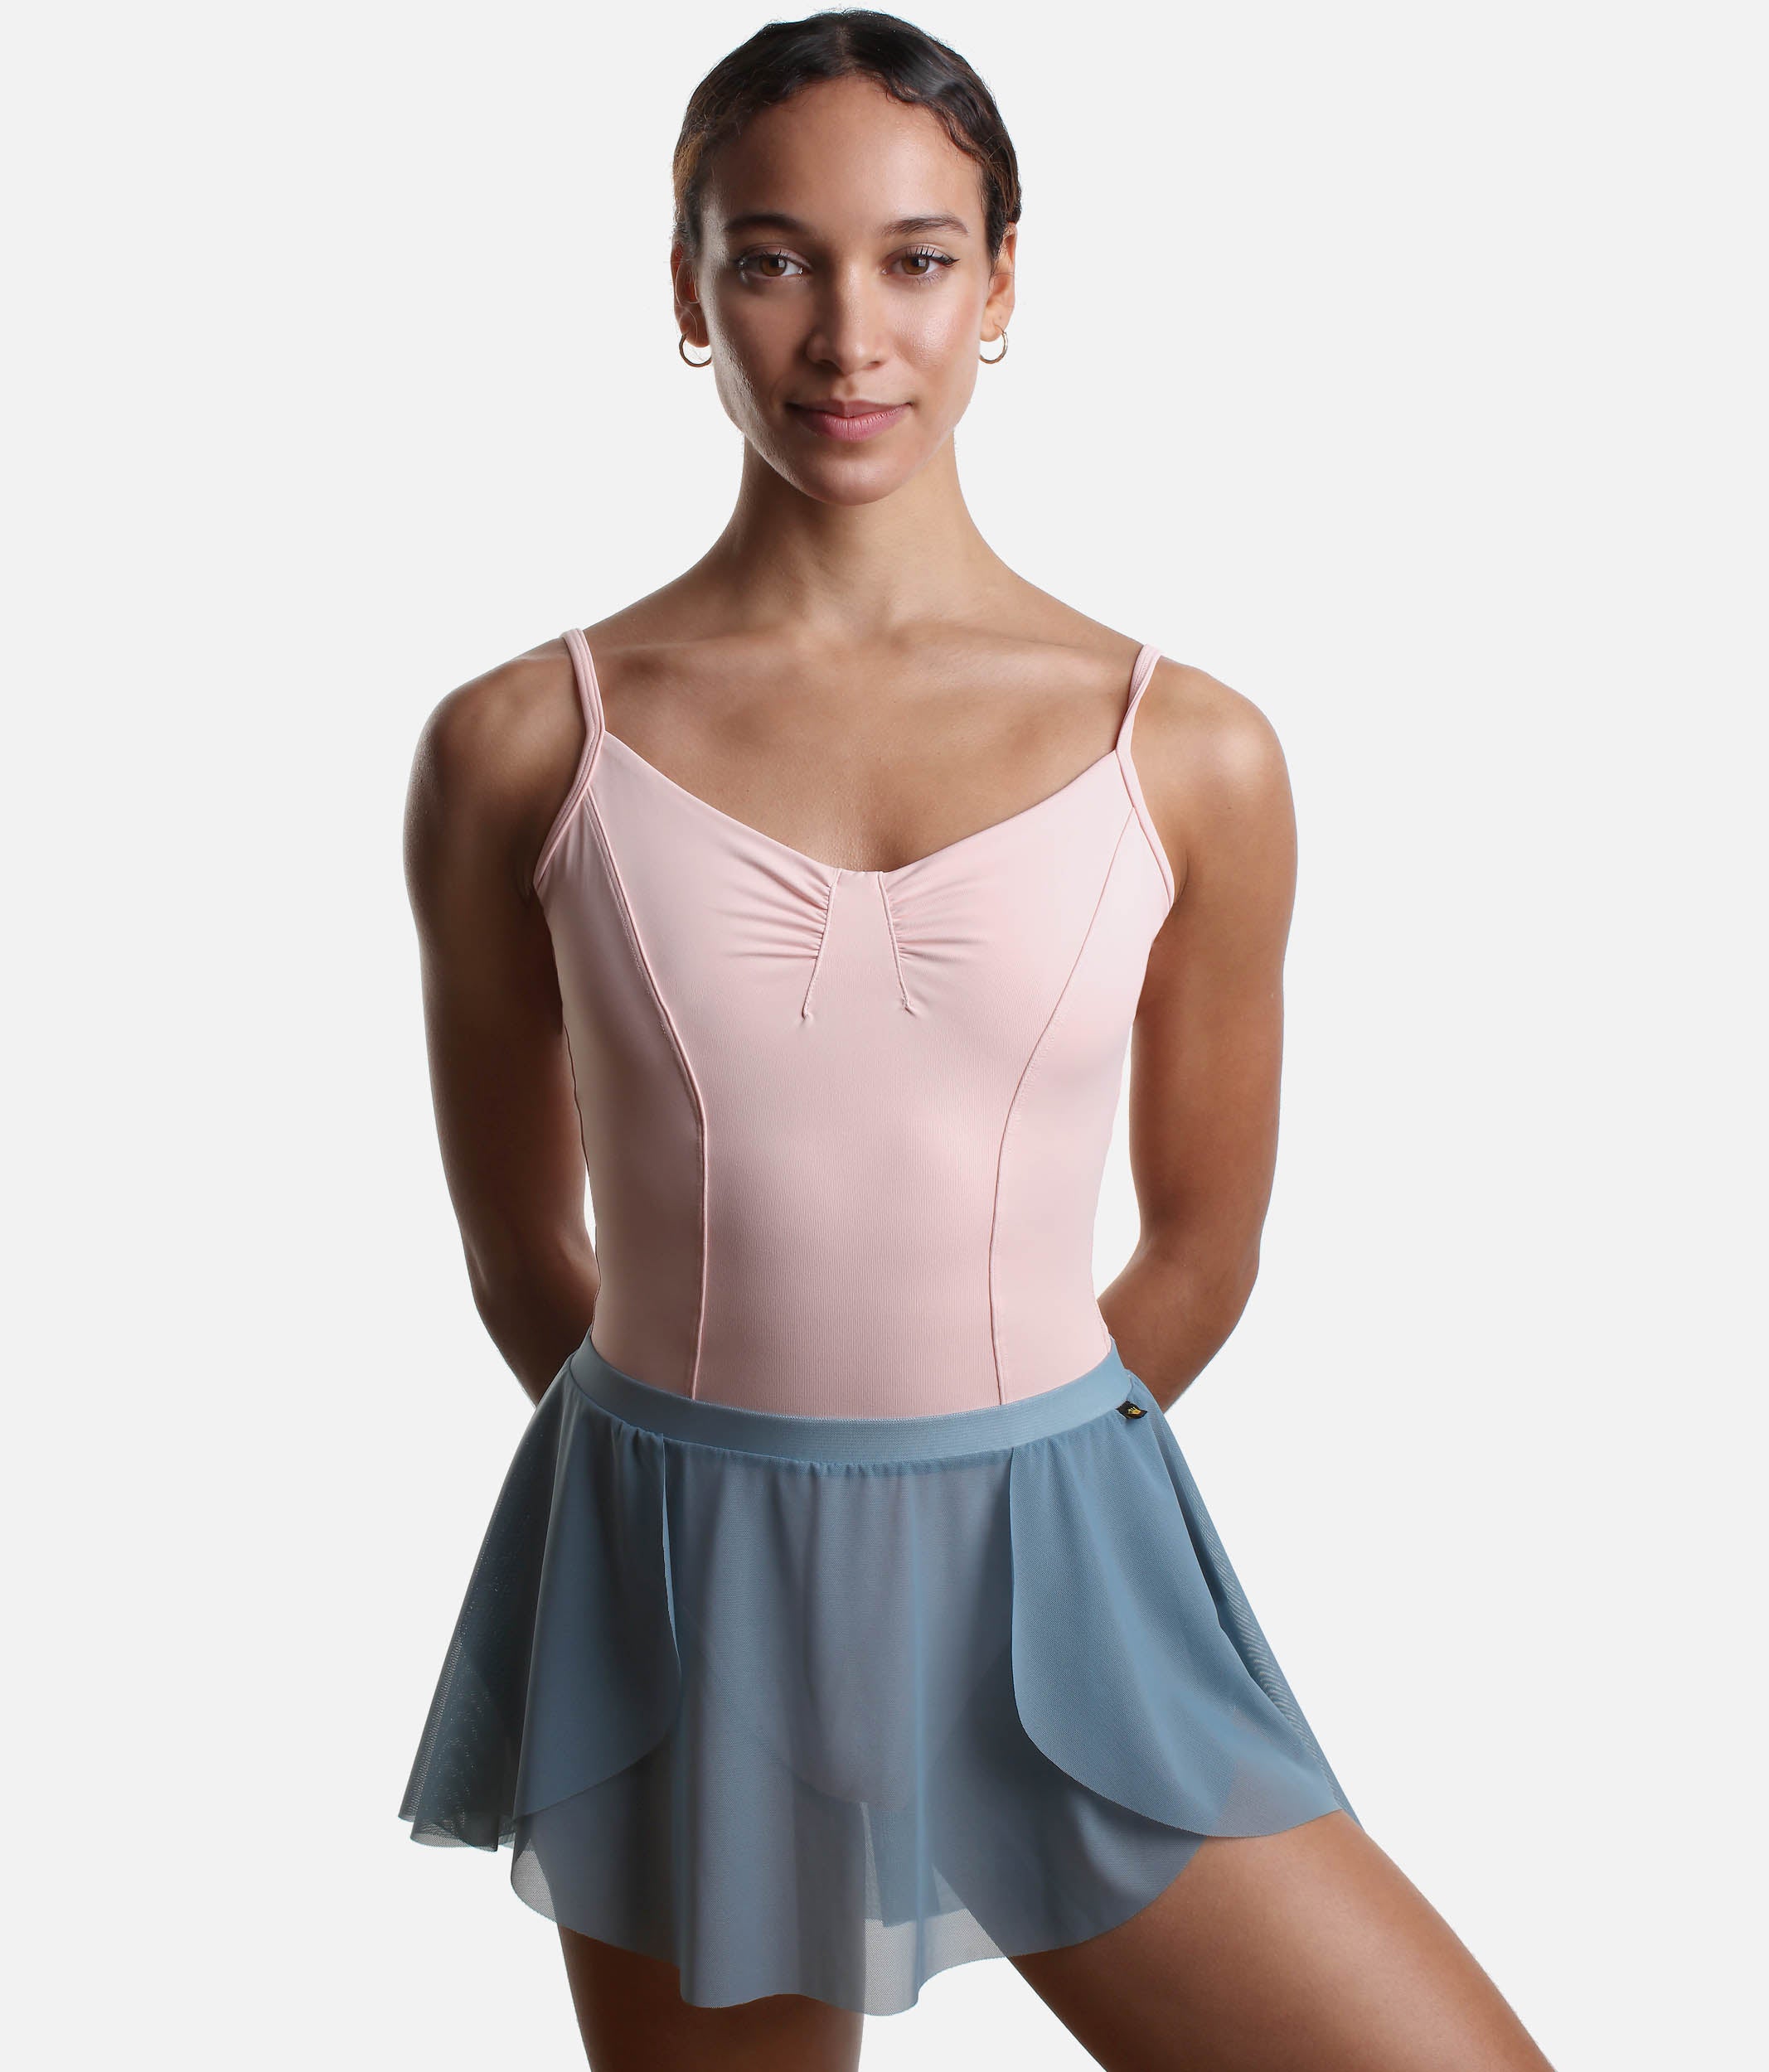 Short Pull On Ballet Skirt, Asymmetric Design - 2114